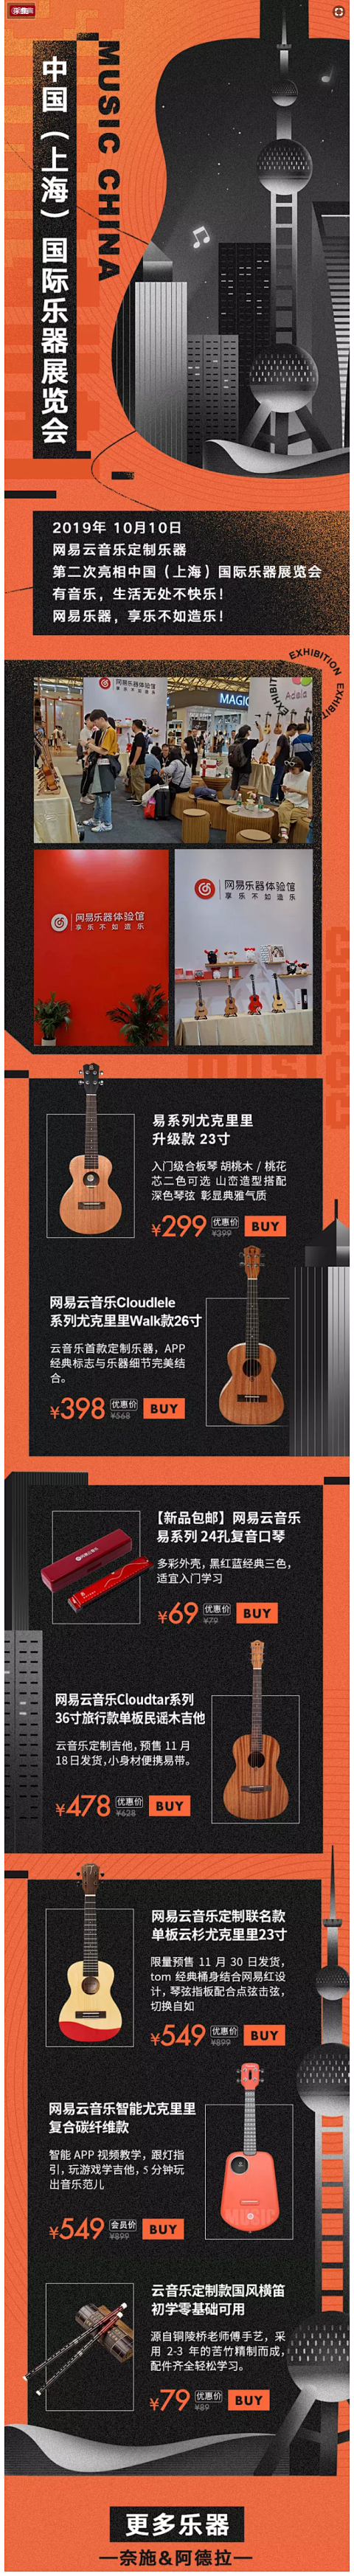 2019上海国际乐器展览会 - 网易云音...